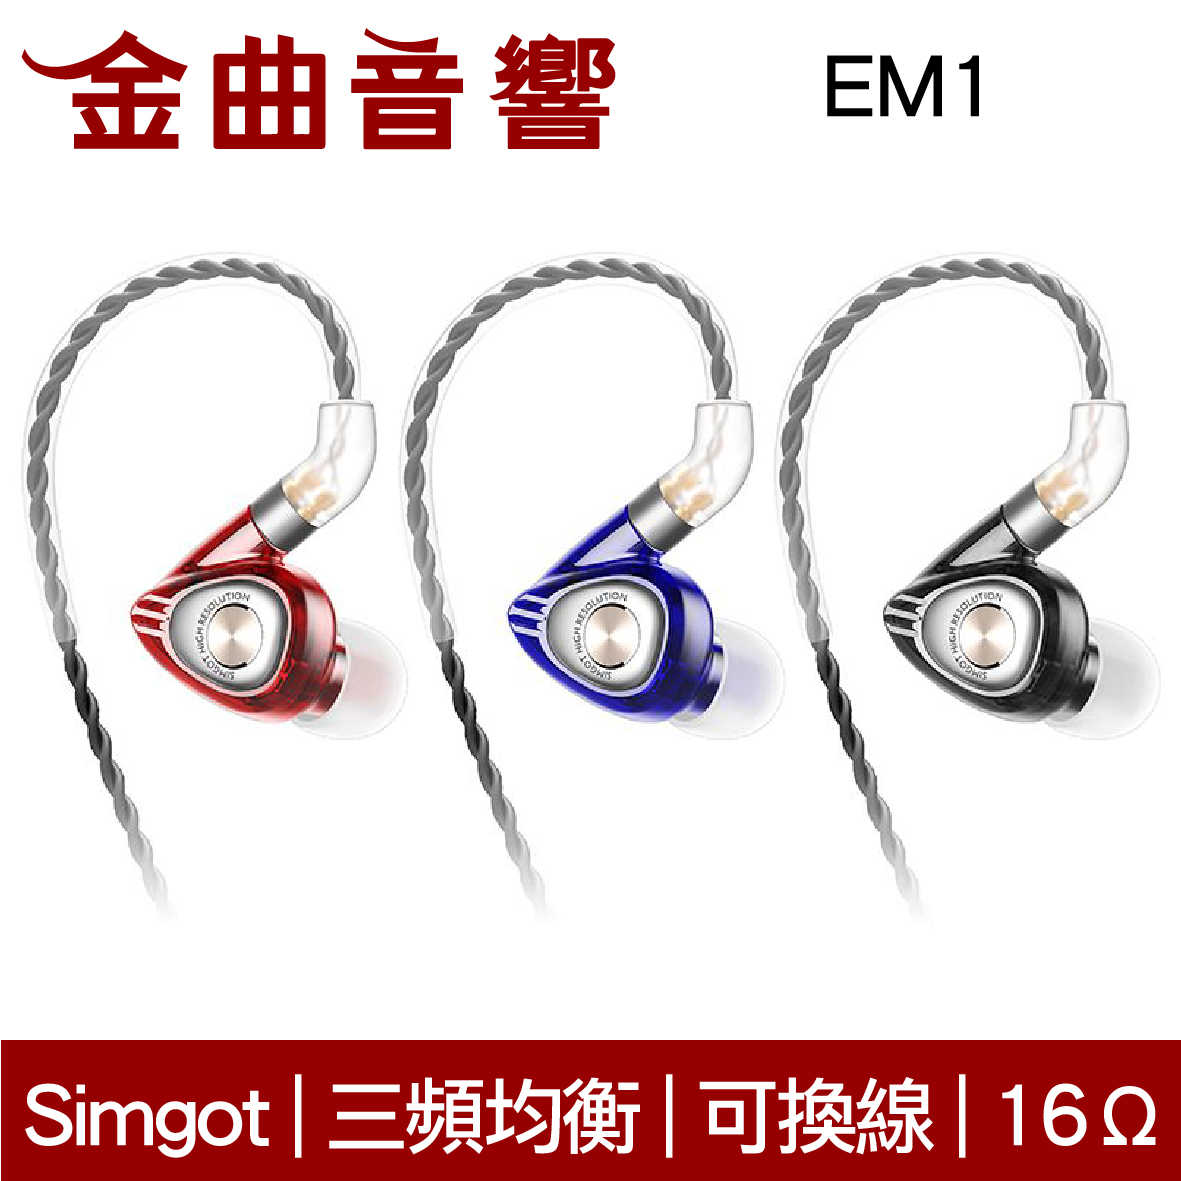 SIMGOT 銅雀 EM1 烈焰紅 x 典雅黑 洛神系列 動圈 入耳式耳機 | 金曲音響